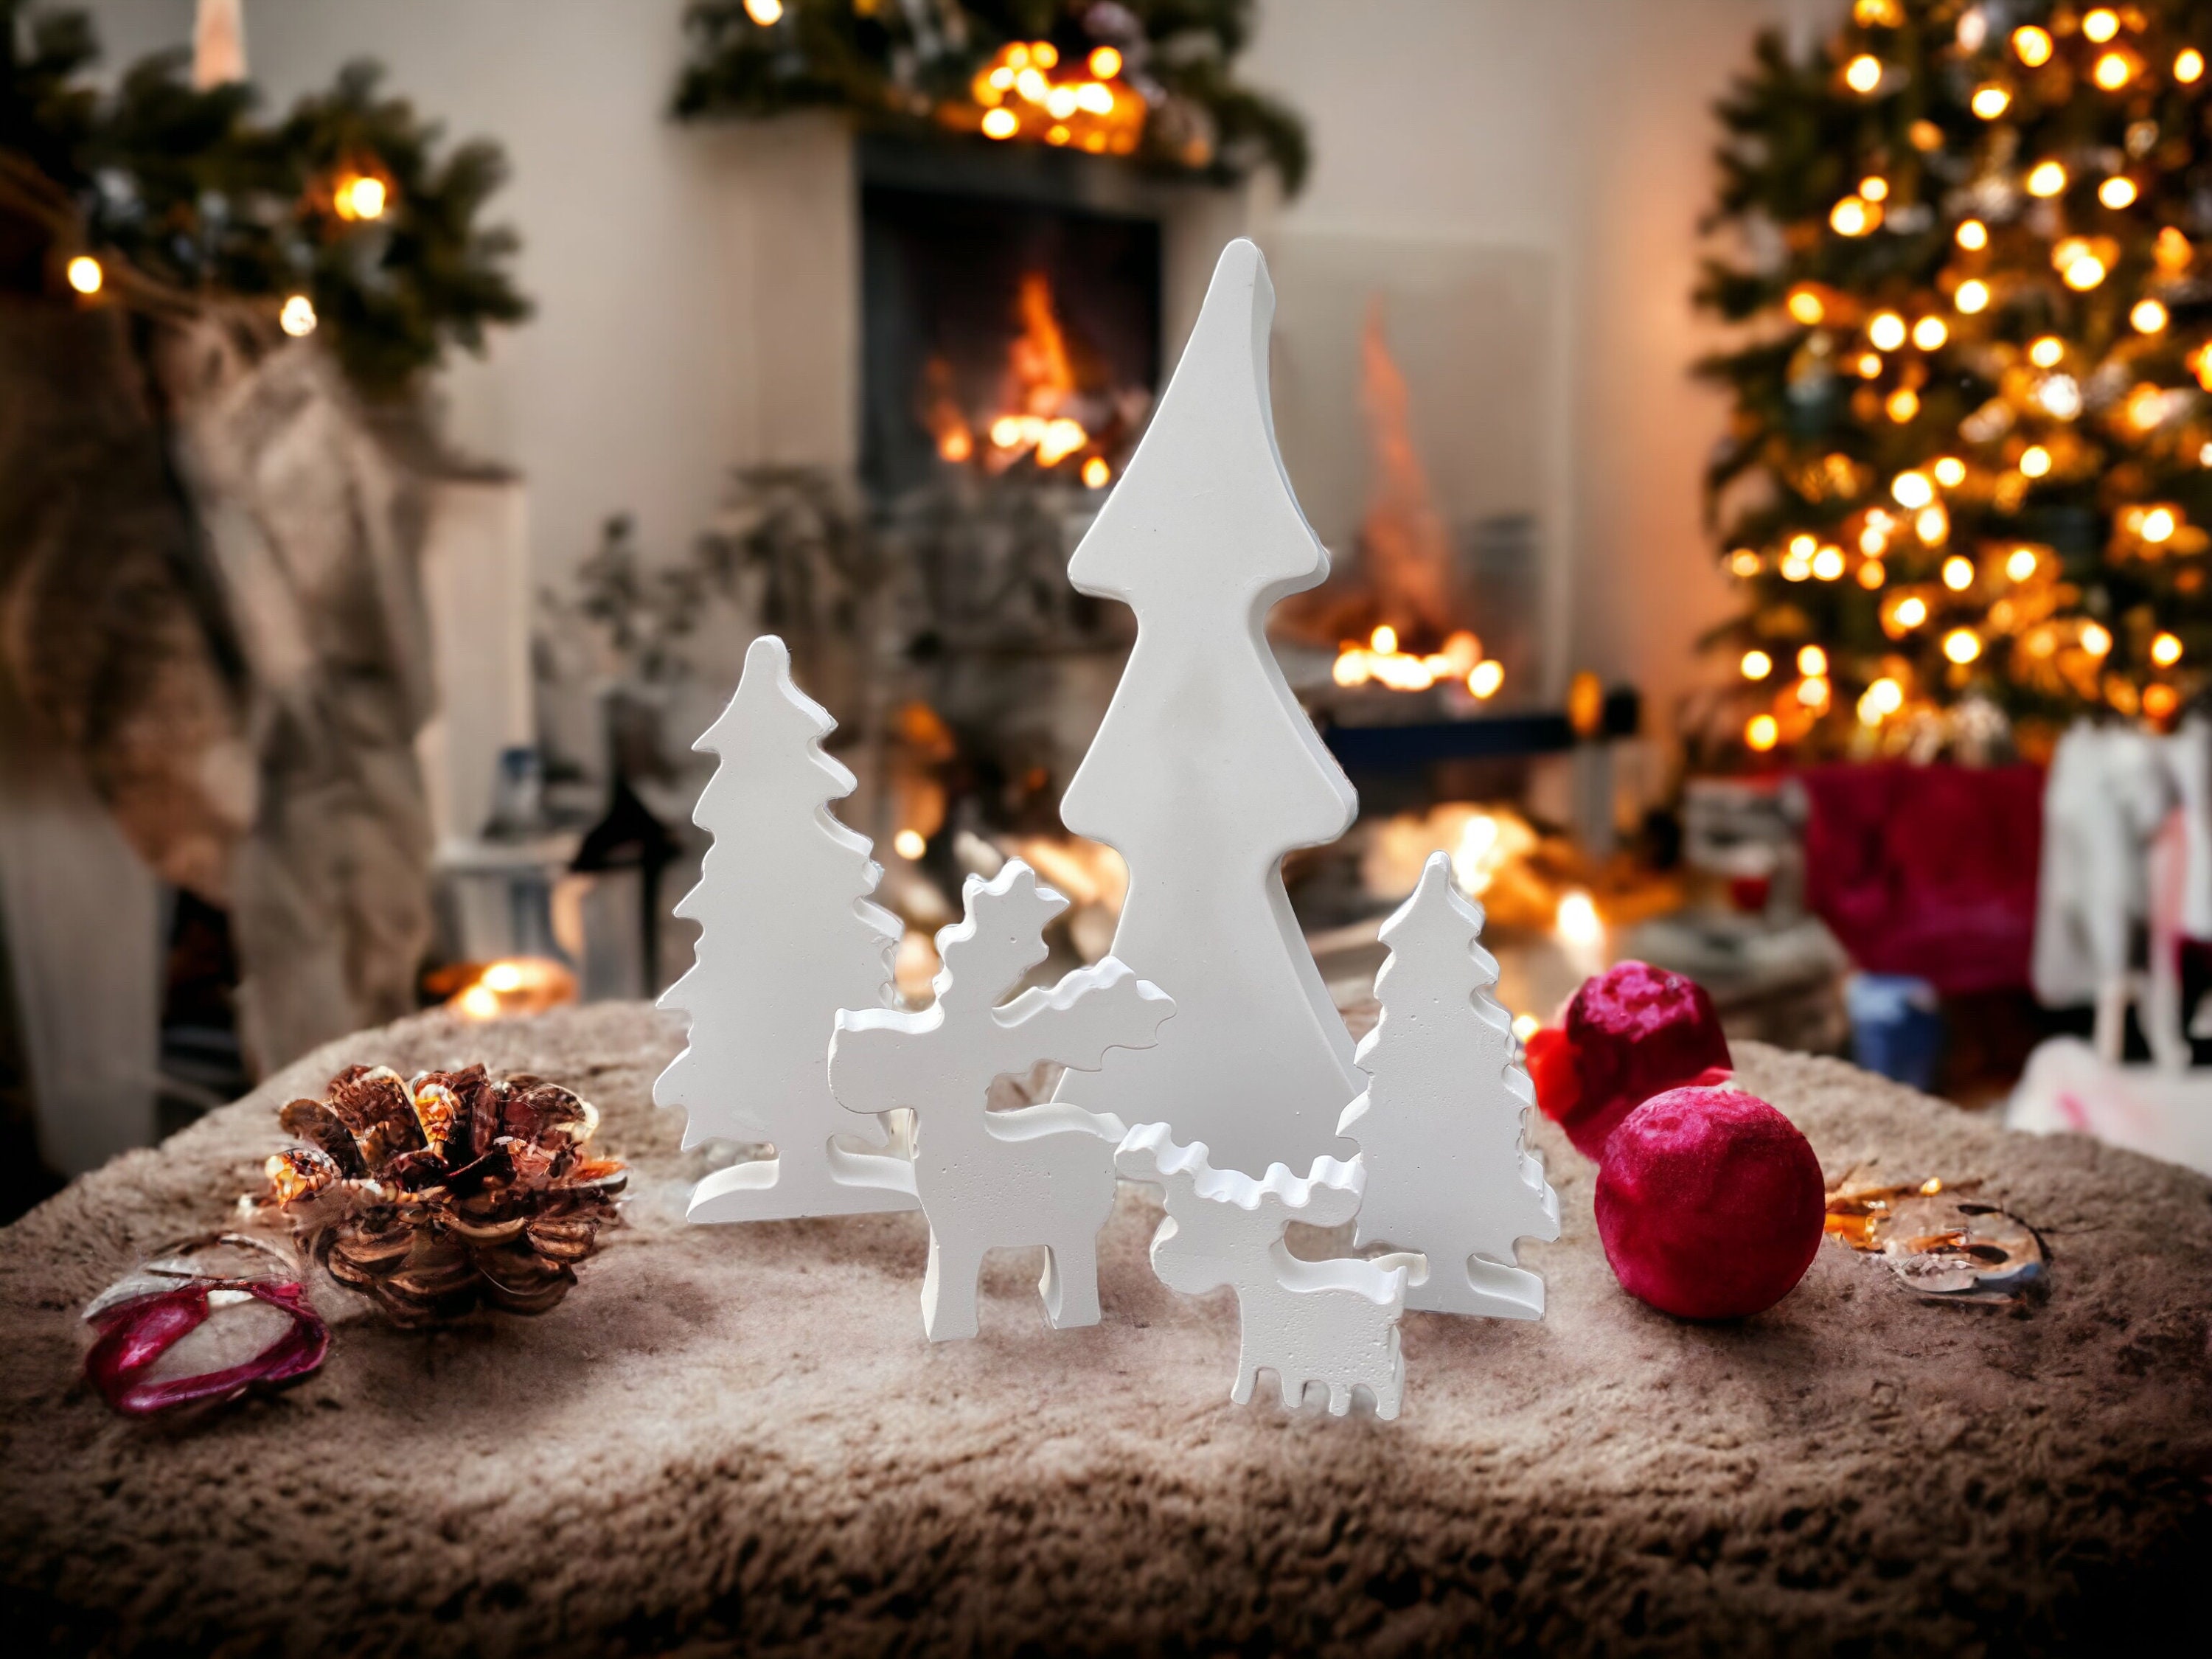 Winter Deko mit Naturmaterialien - 25 märchenhafte Ideen  Deko winter  weihnachten, Minimalistisch weihnachten, Skandinavischer weihnachtsschmuck